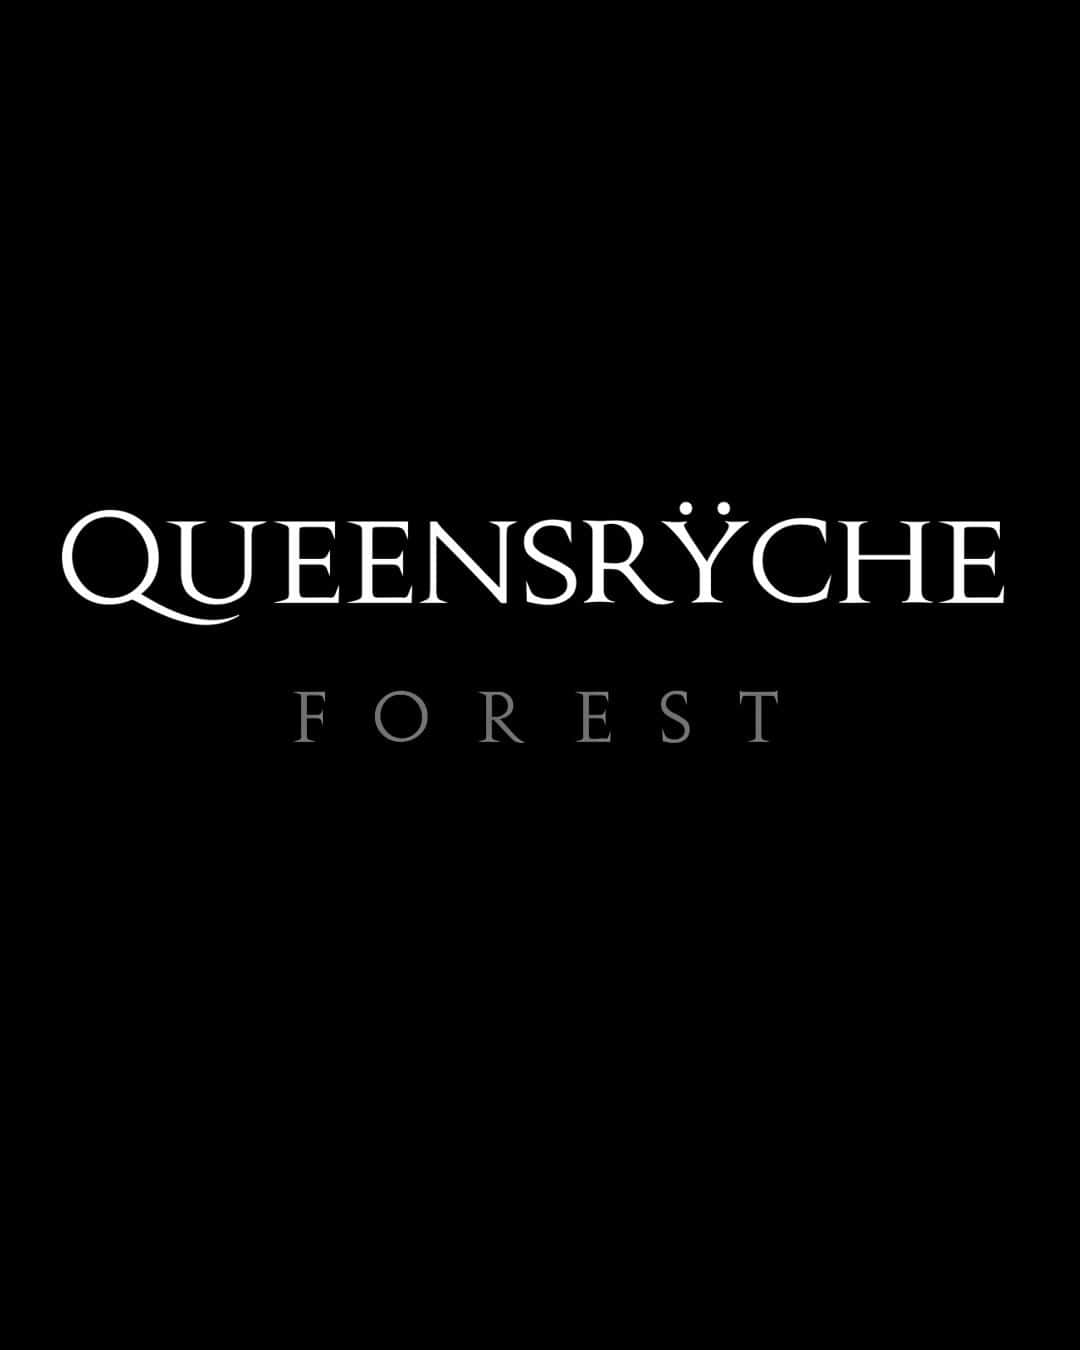 Queensrycheのインスタグラム